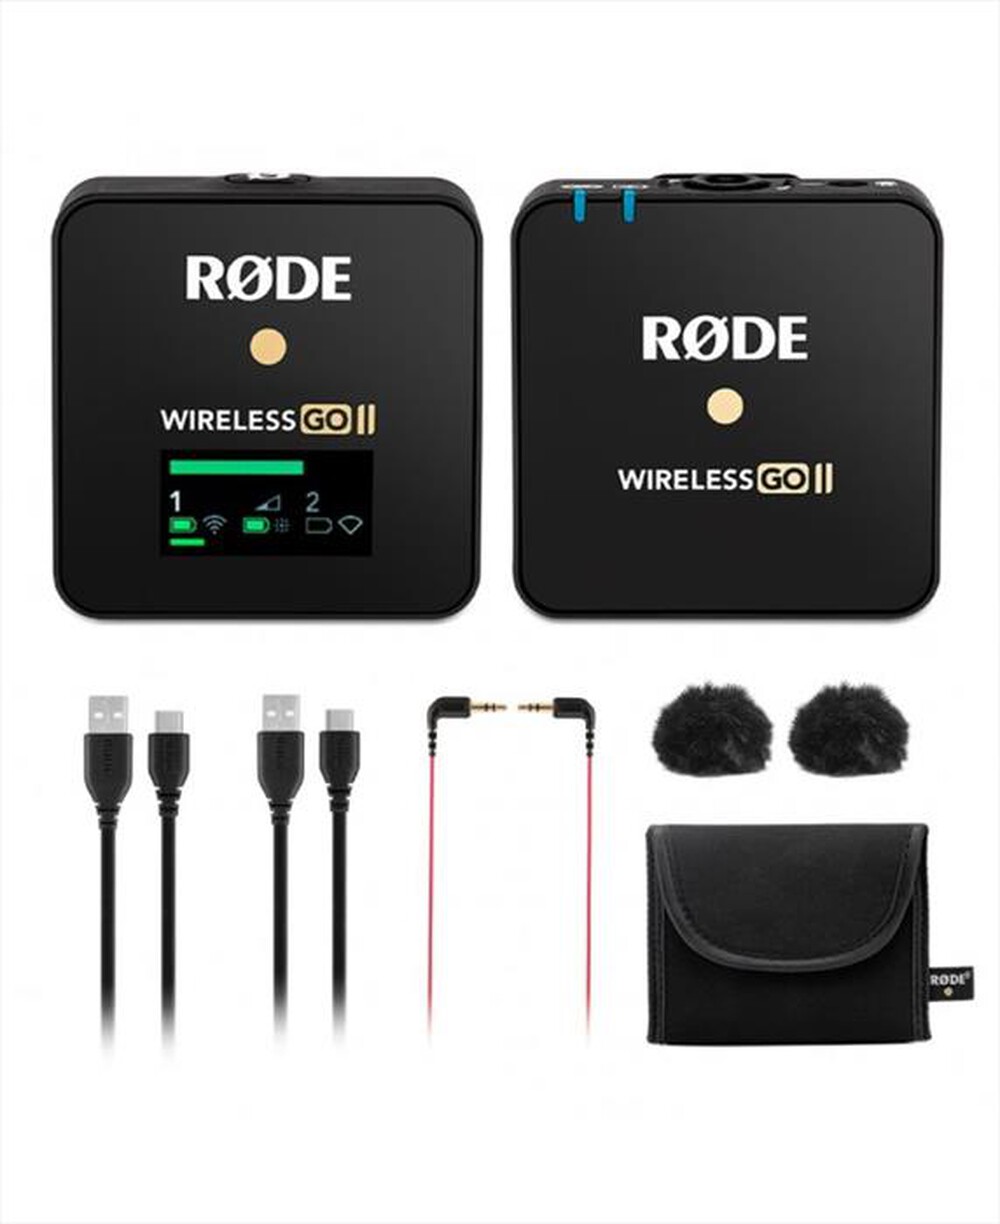 "RODE - Sistema microfonico wireless GO II WIRELESS-Black"